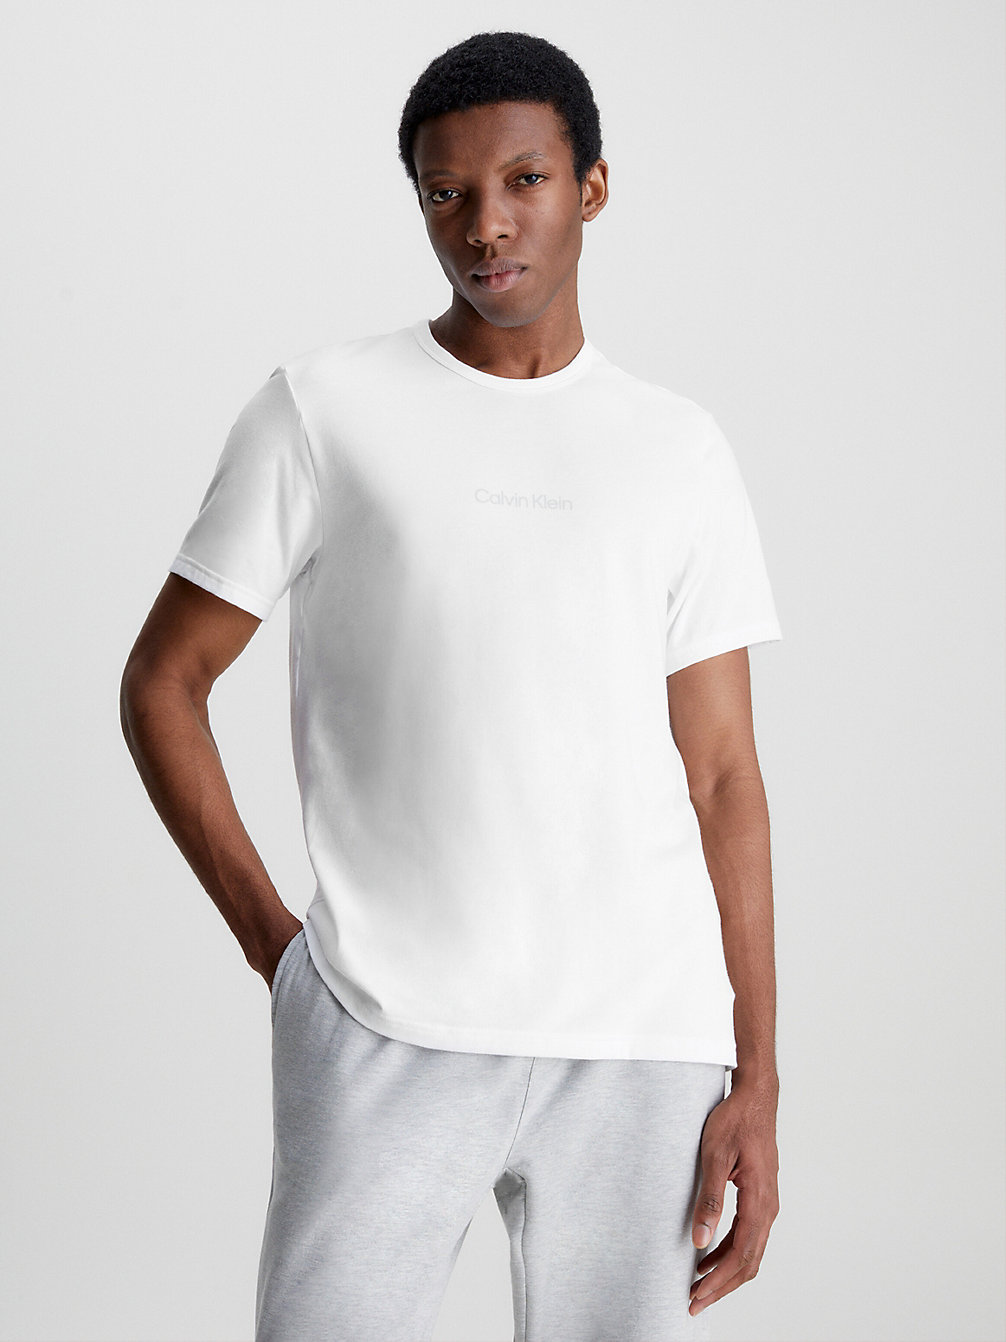 WHITE > Lounge-T-Shirt - Modern Structure > undefined men - Calvin Klein